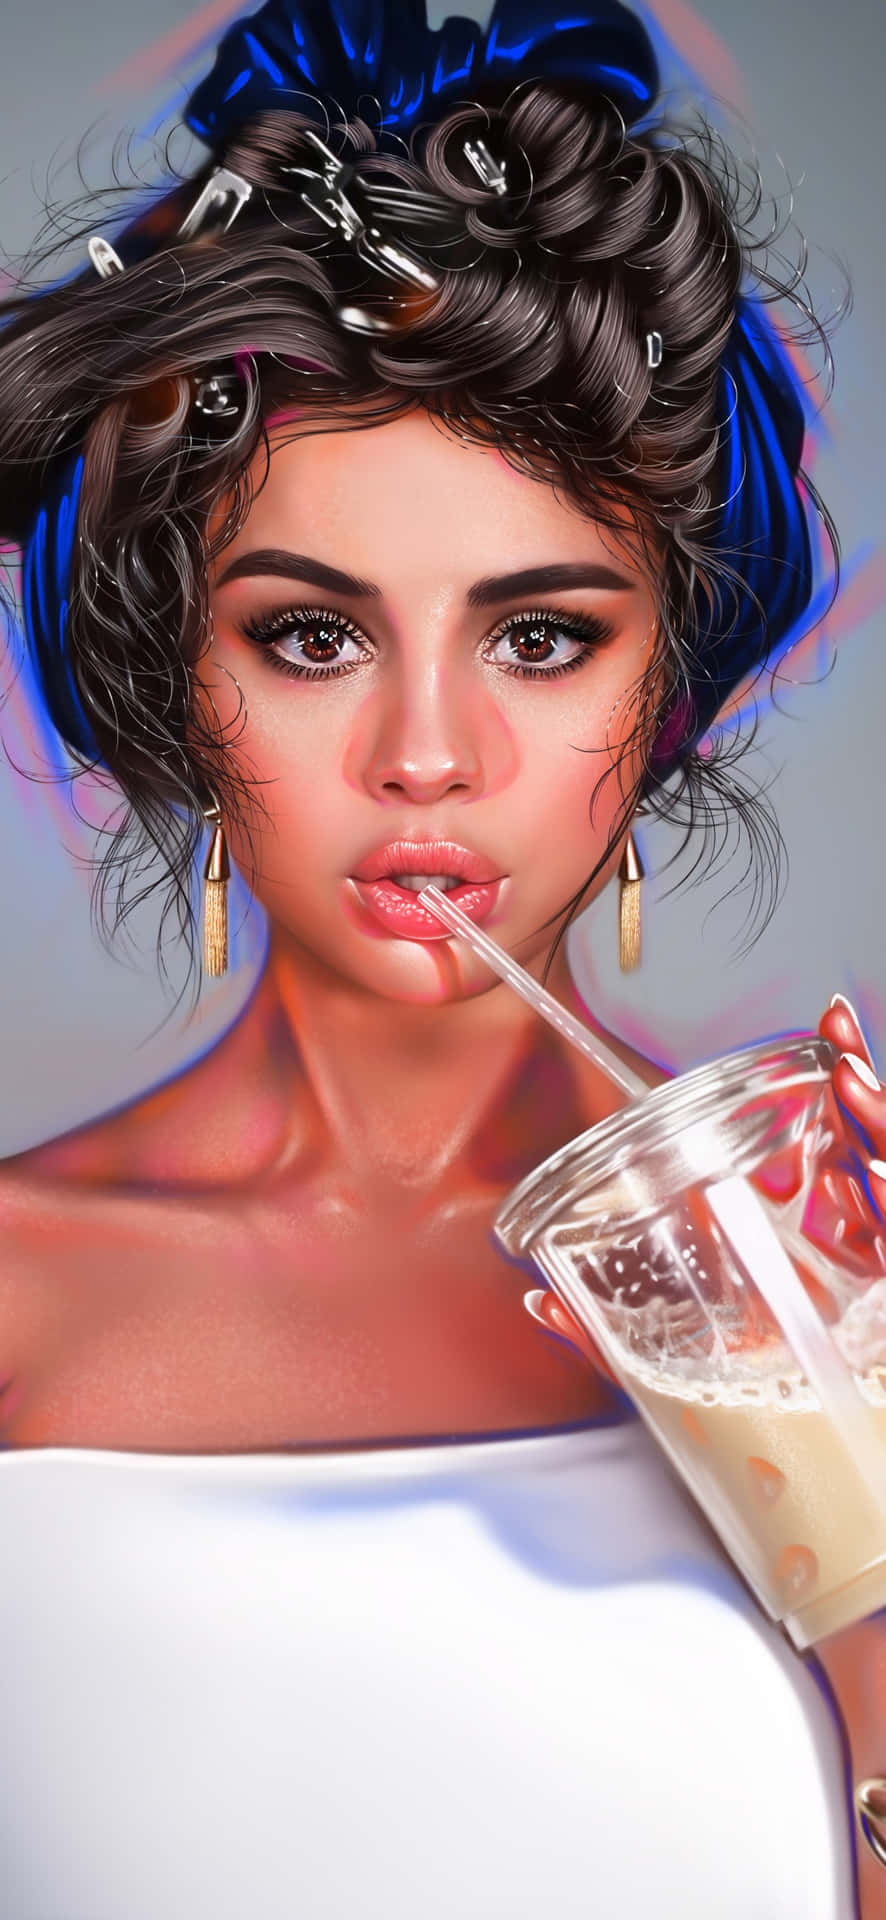 Fådet Bästa Av Selena Gomez På Din Iphone. Wallpaper